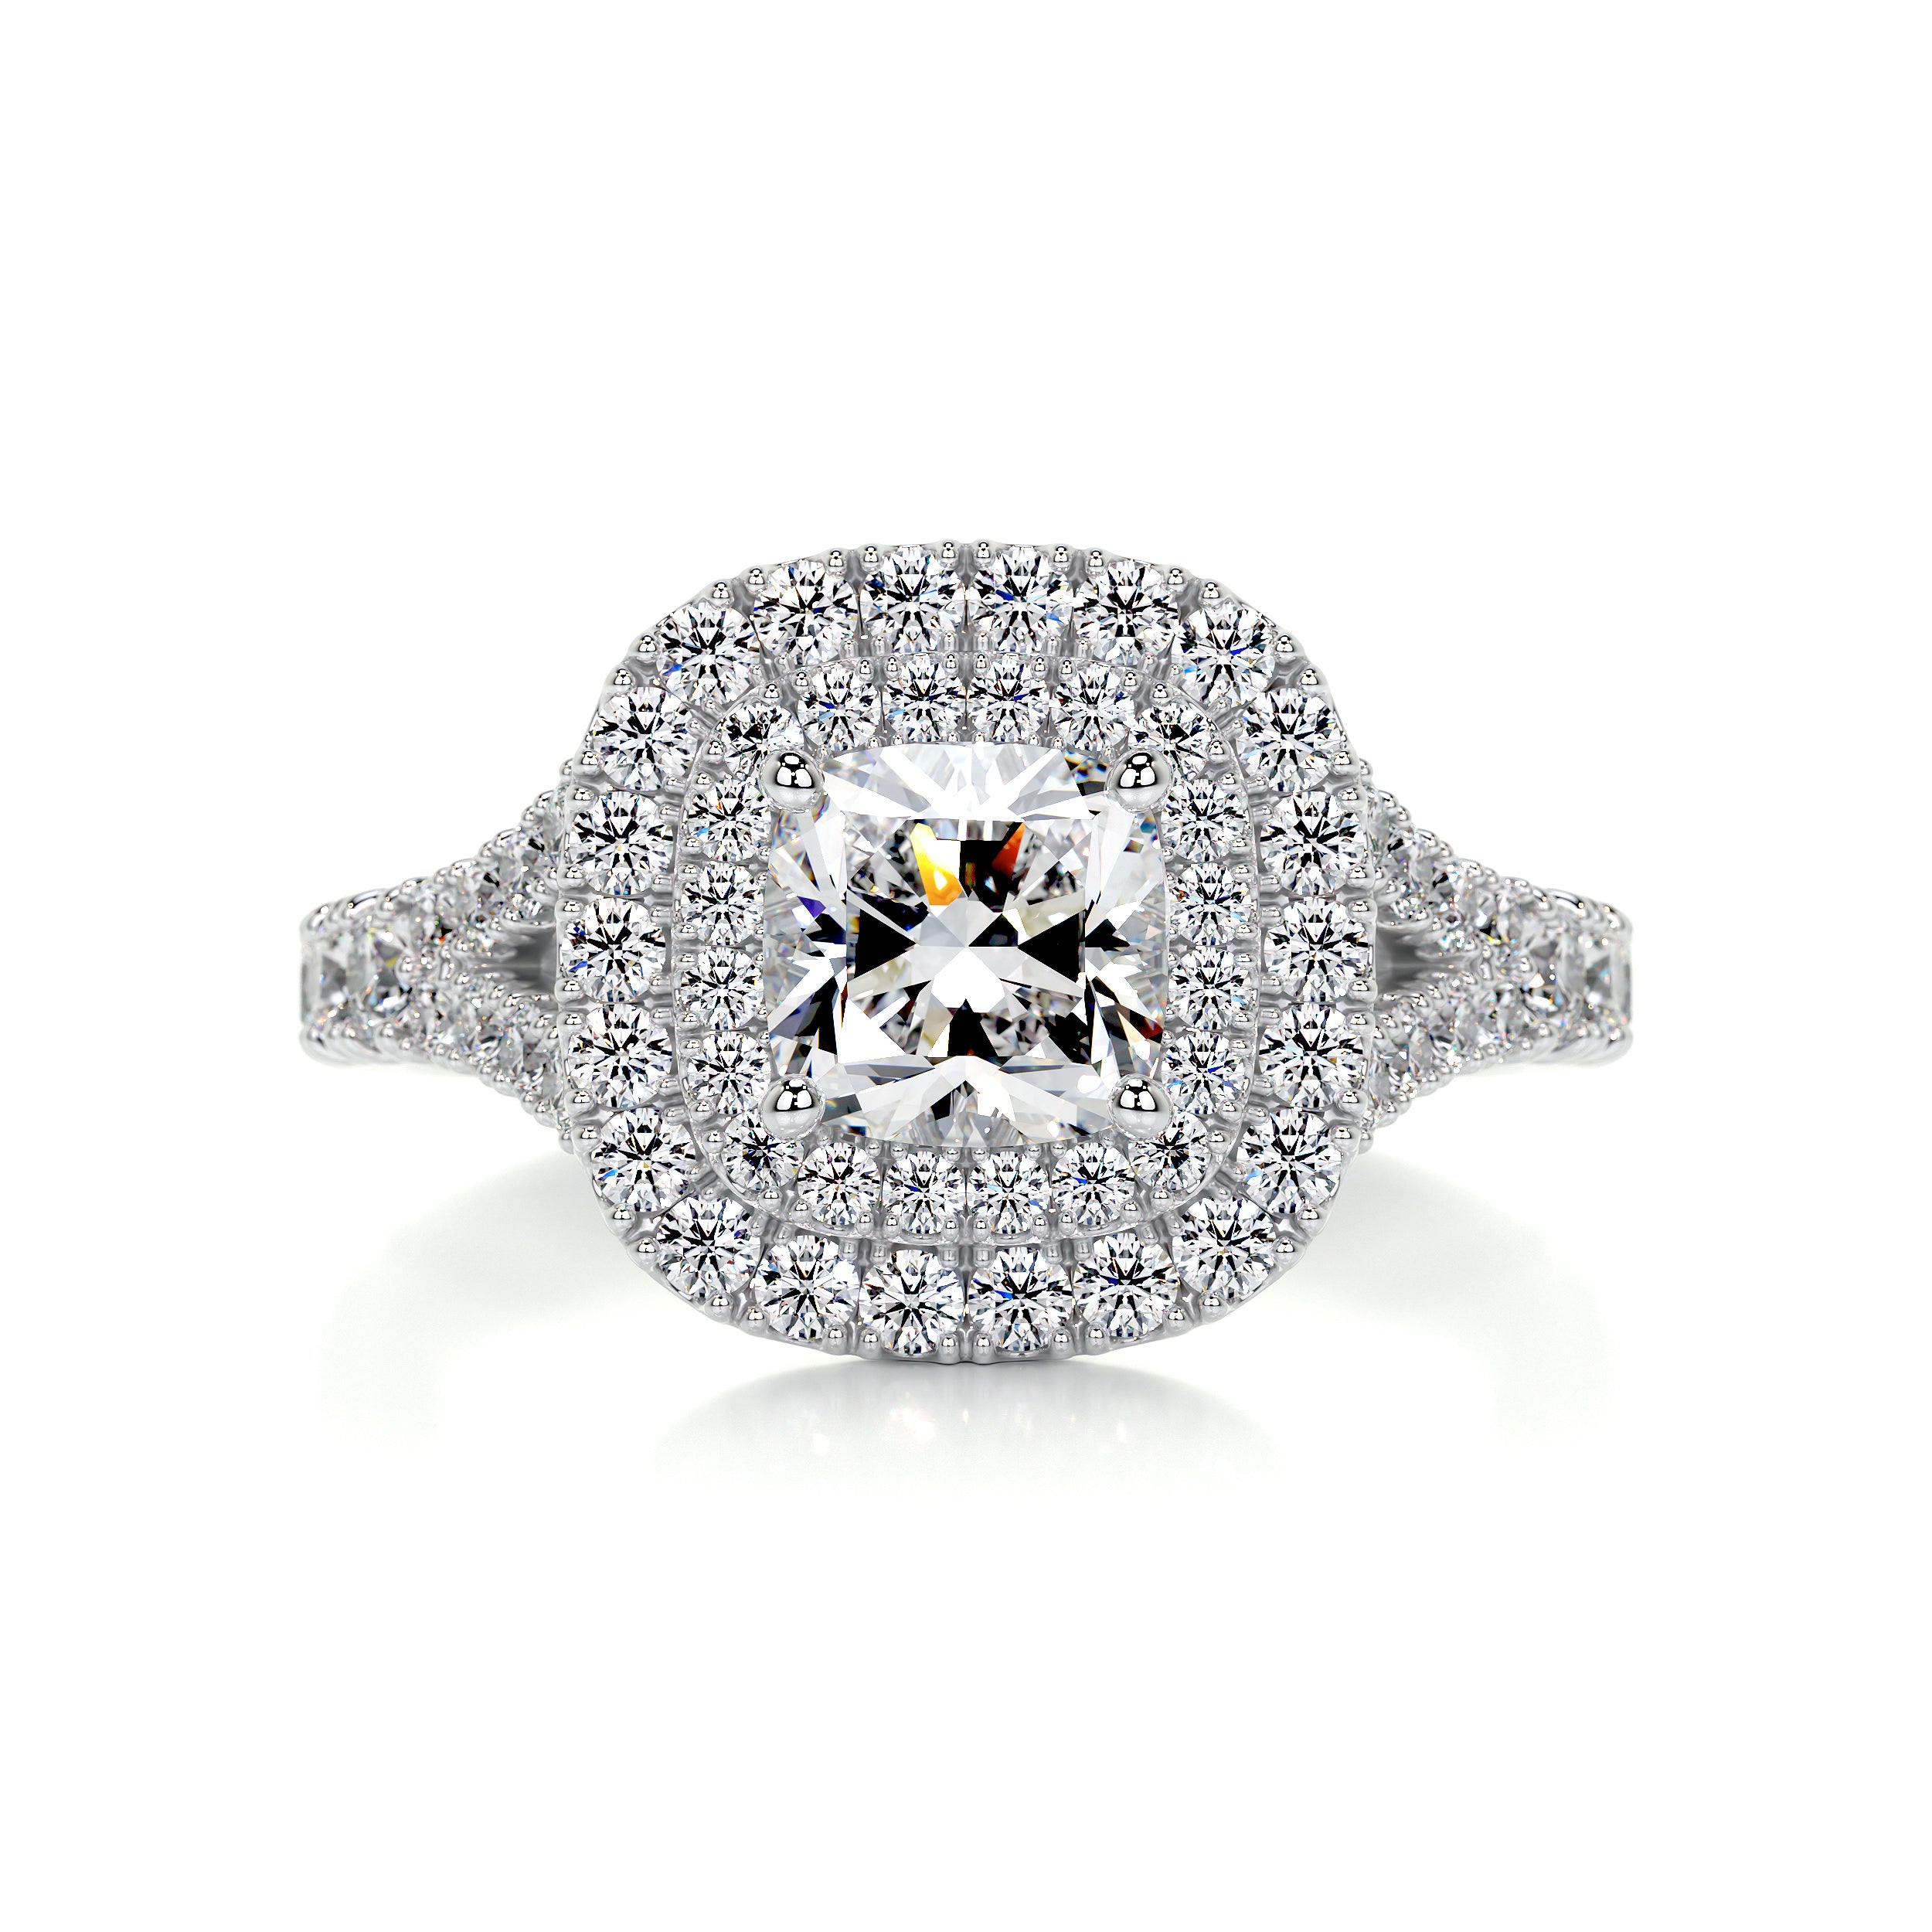 Tina Diamond Engagement Ring   (1.90 Carat) -18K White Gold